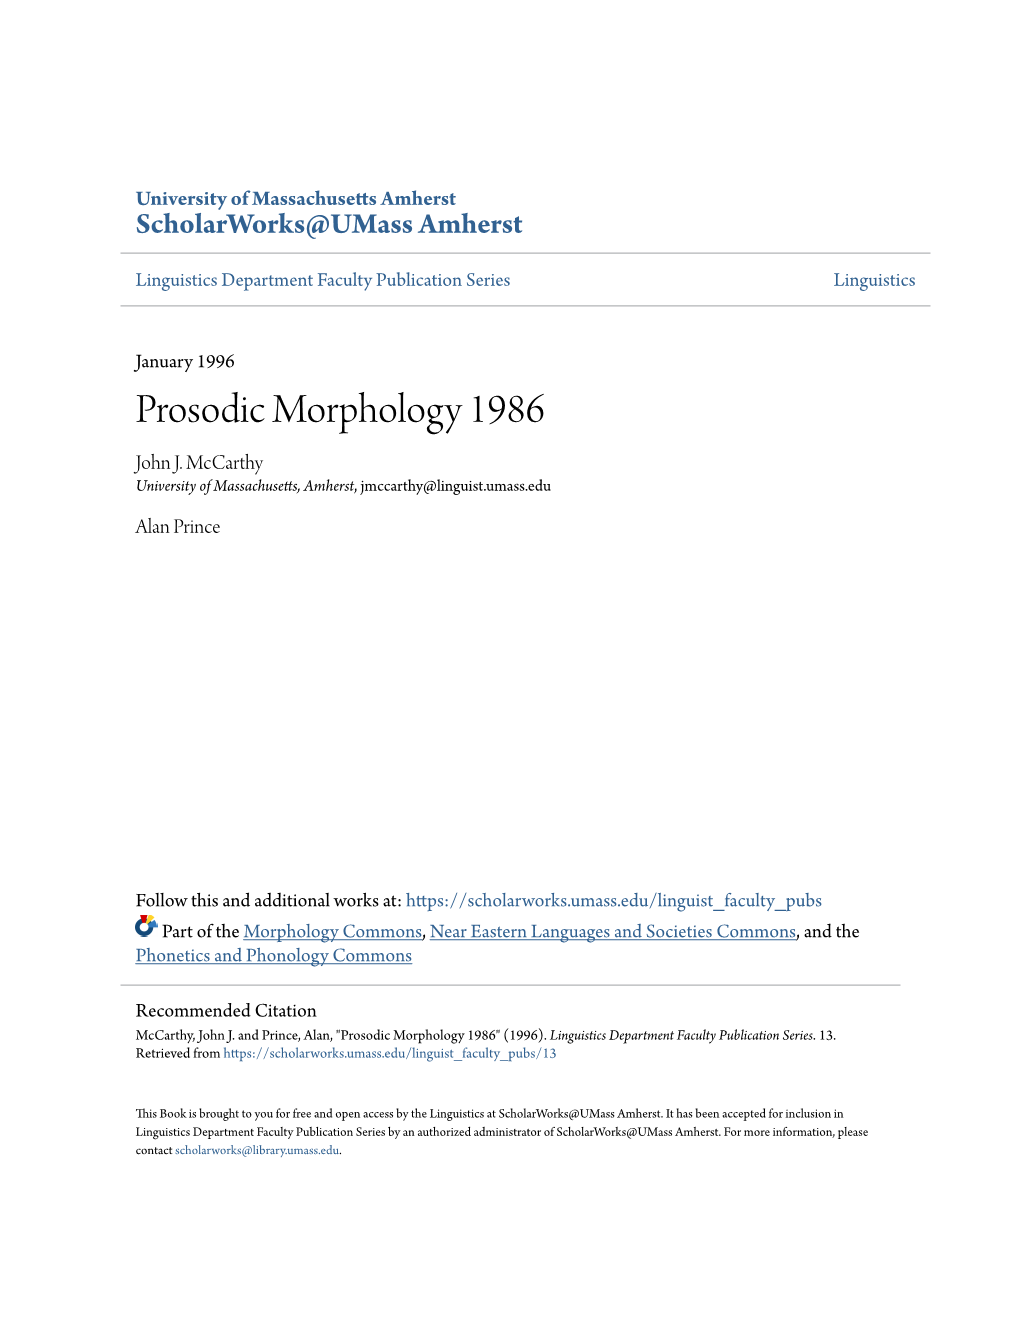 Prosodic Morphology 1986 John J